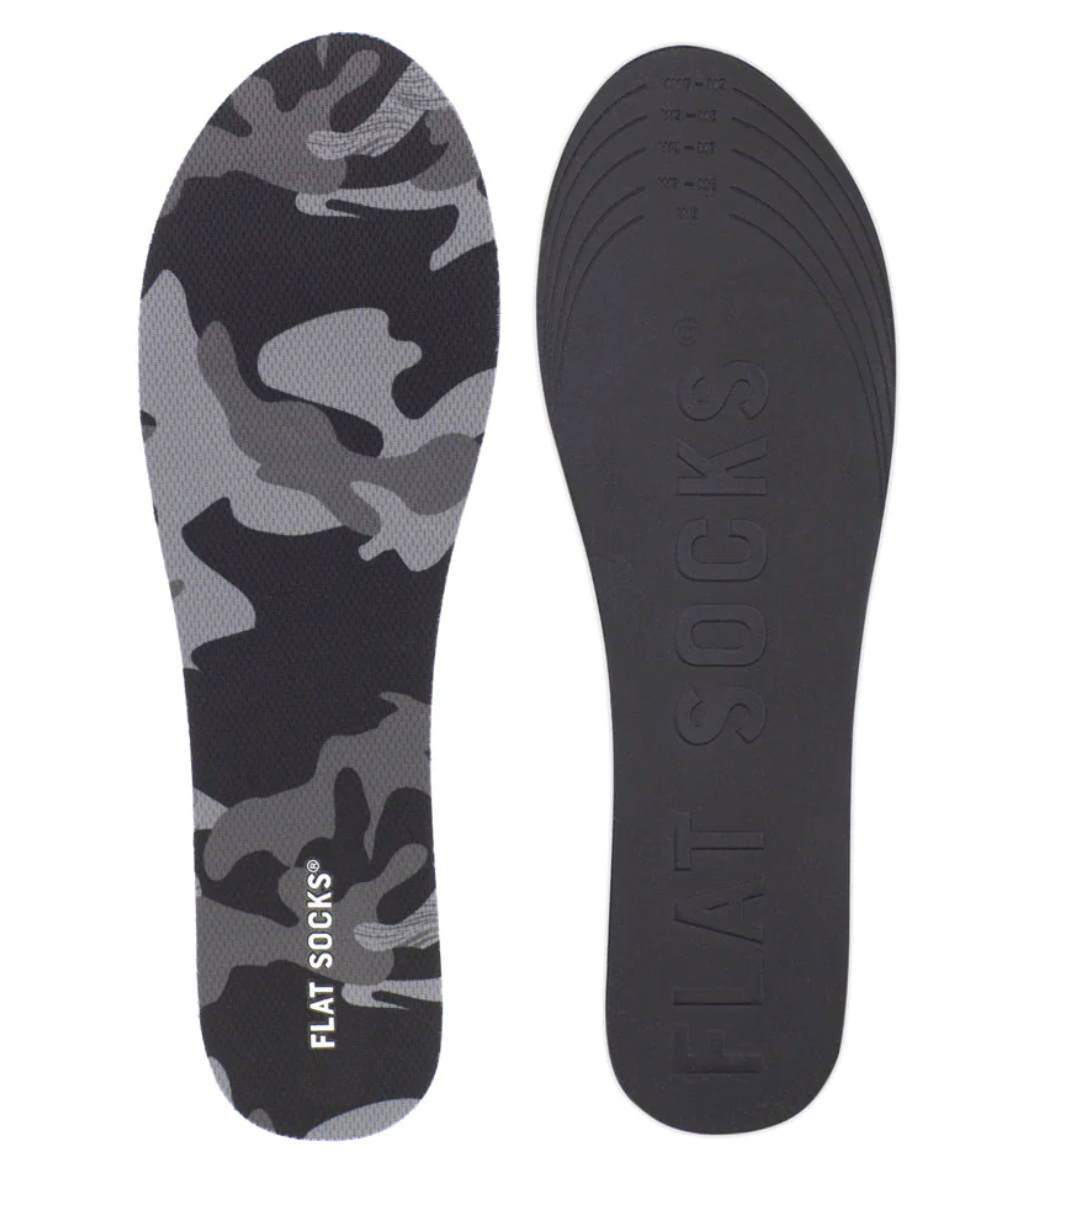 Flat Socks - Black Camo - SMALL